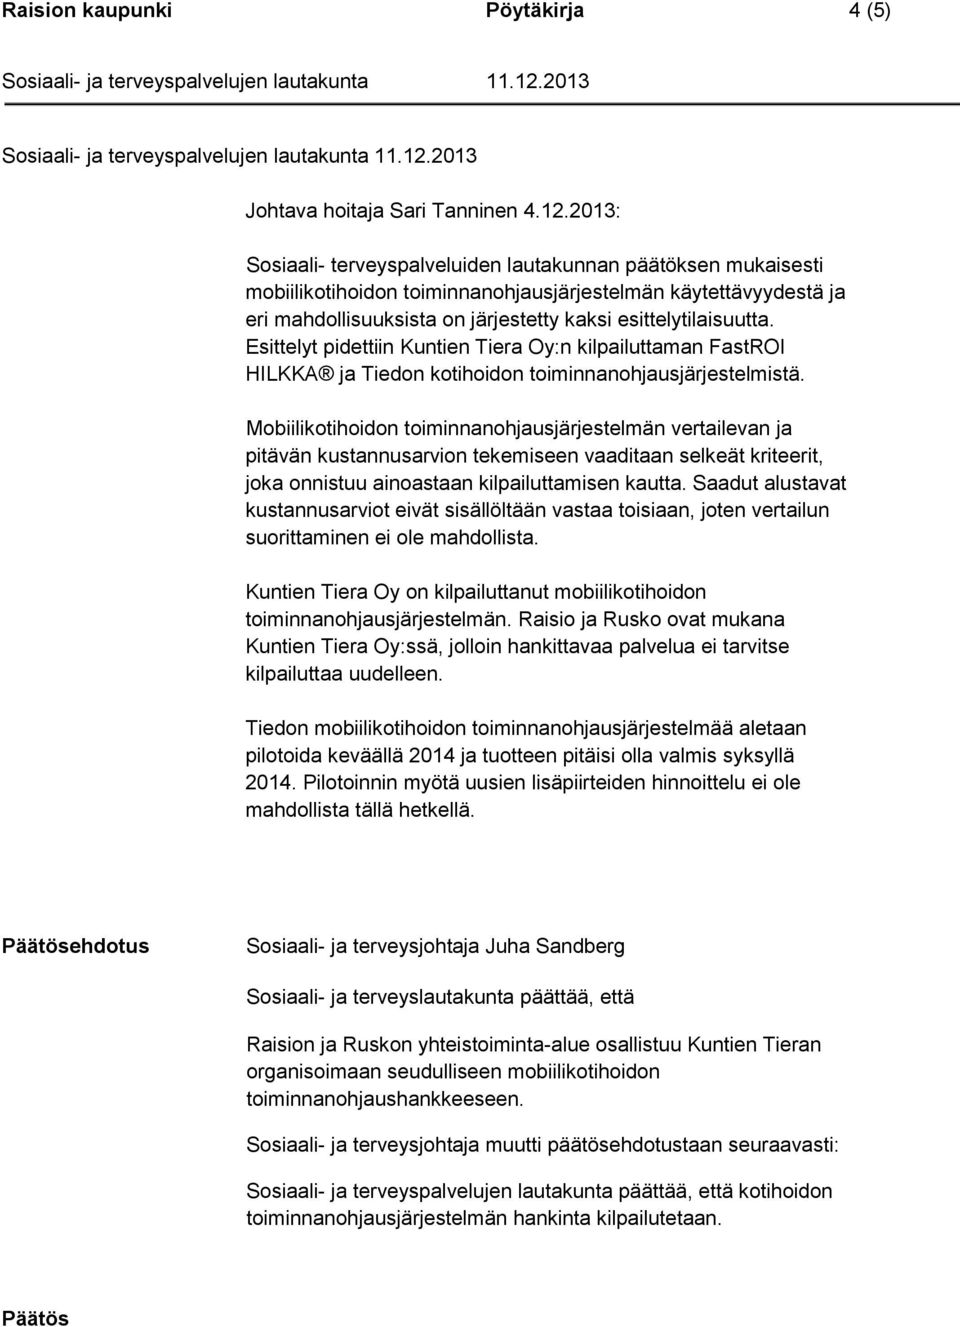 Esittelyt pidettiin Kuntien Tiera Oy:n kilpailuttaman FastROI HILKKA ja Tiedon kotihoidon toiminnanohjausjärjestelmistä.